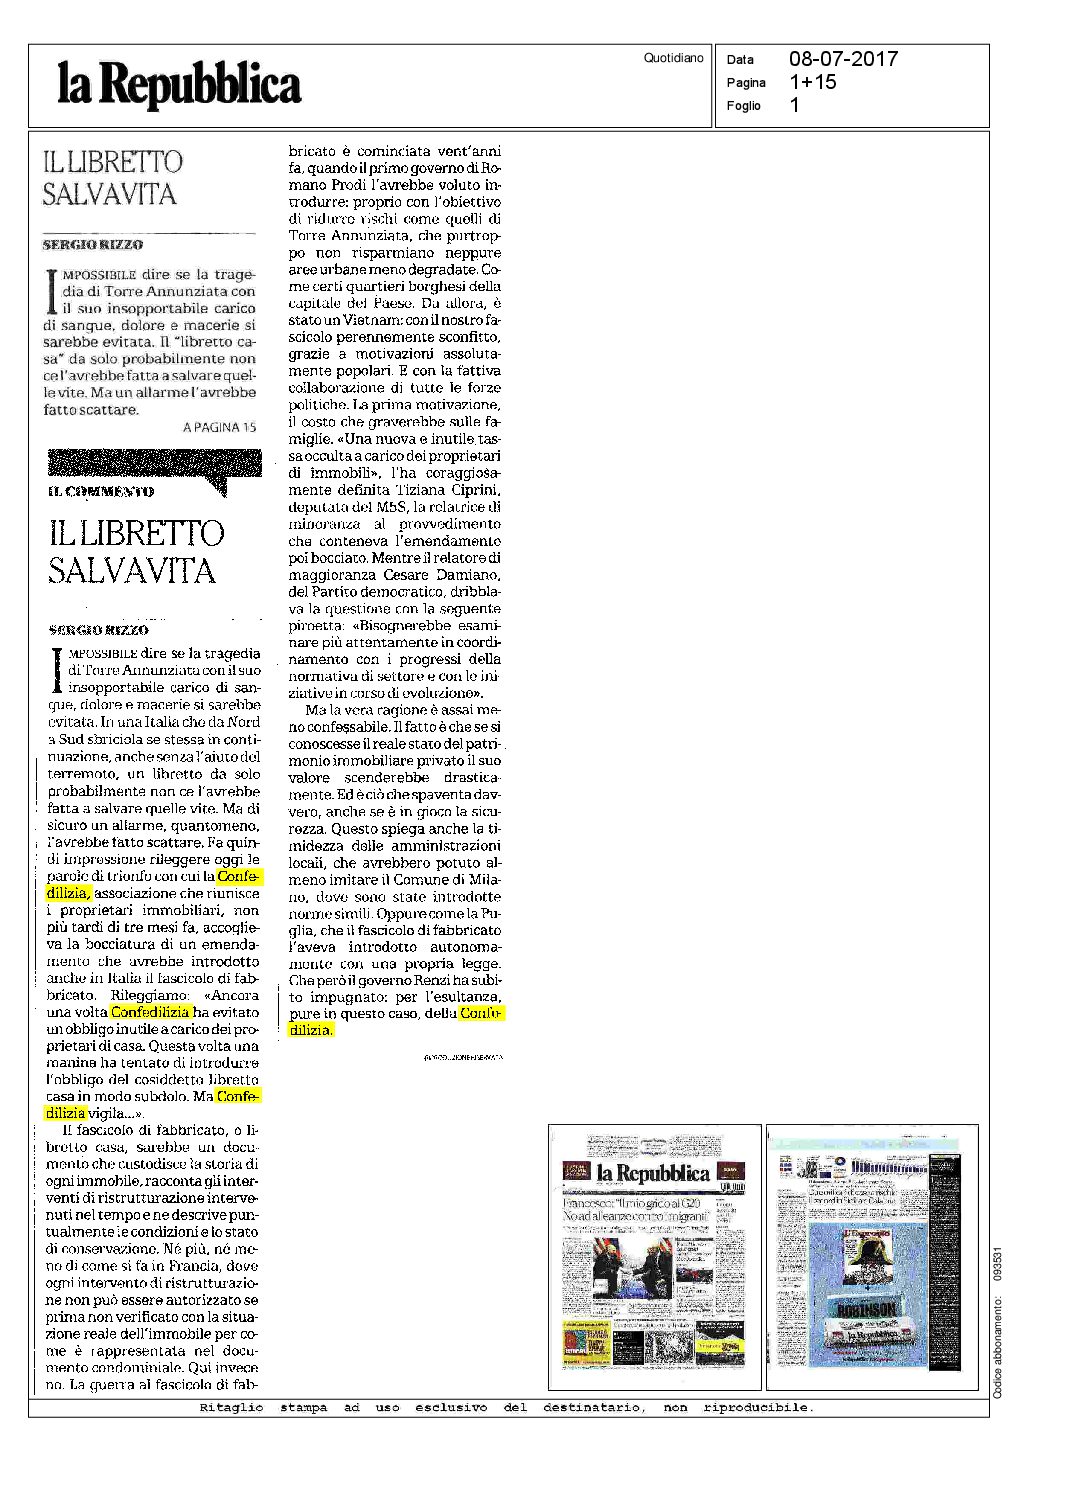 La Repubblica_8.7.17